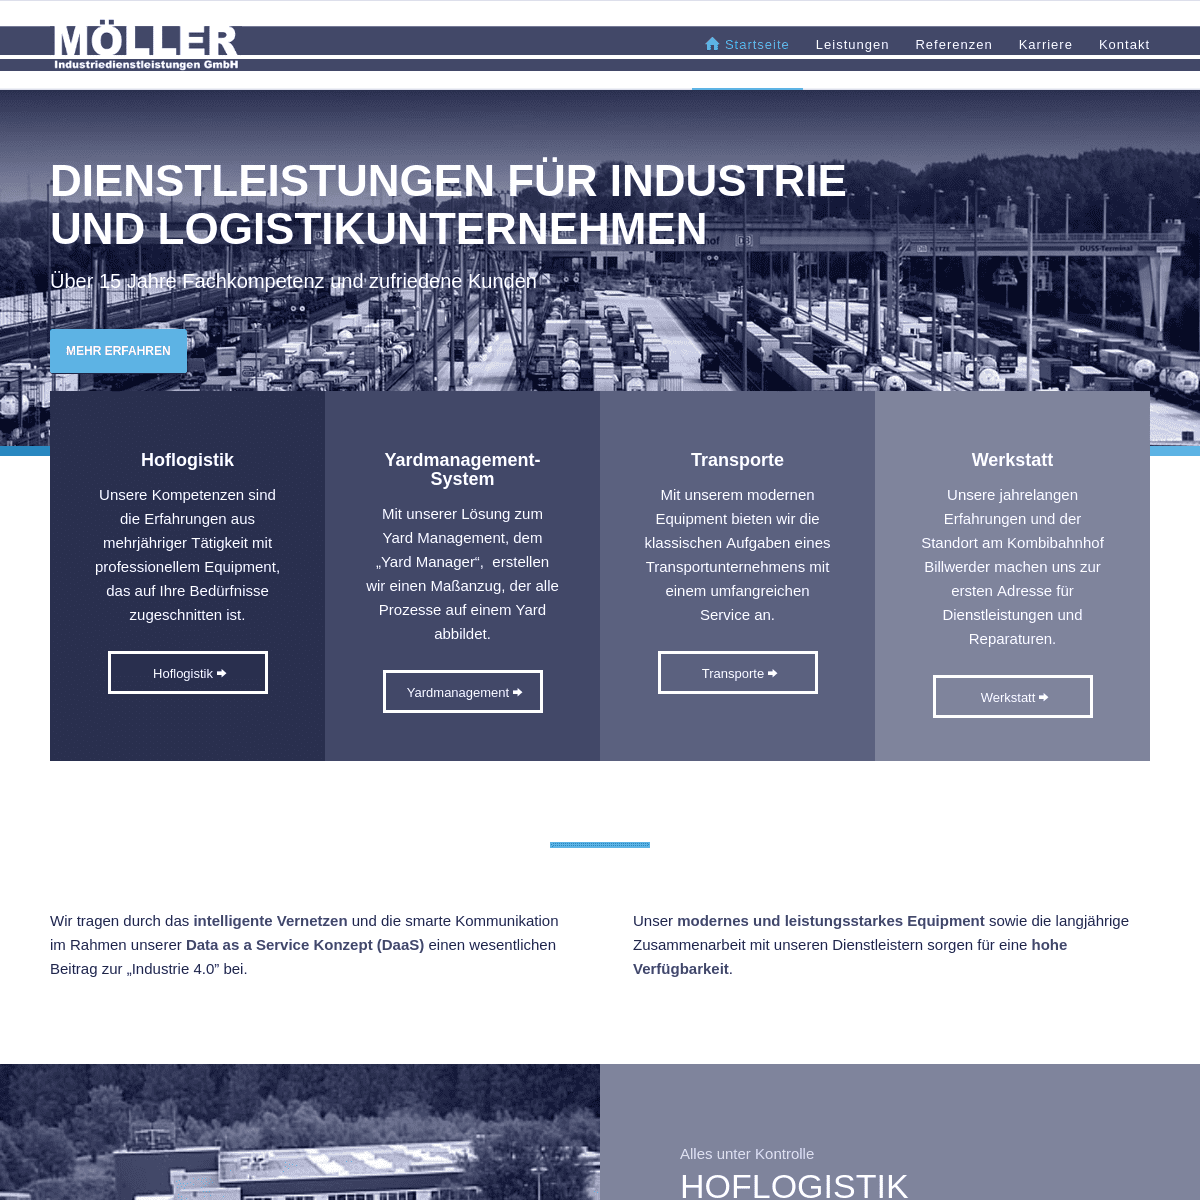 Hoflogistik | Transporte | Betriebshofsteuerung | Werkstatt › Möller Industriedienstleistungen